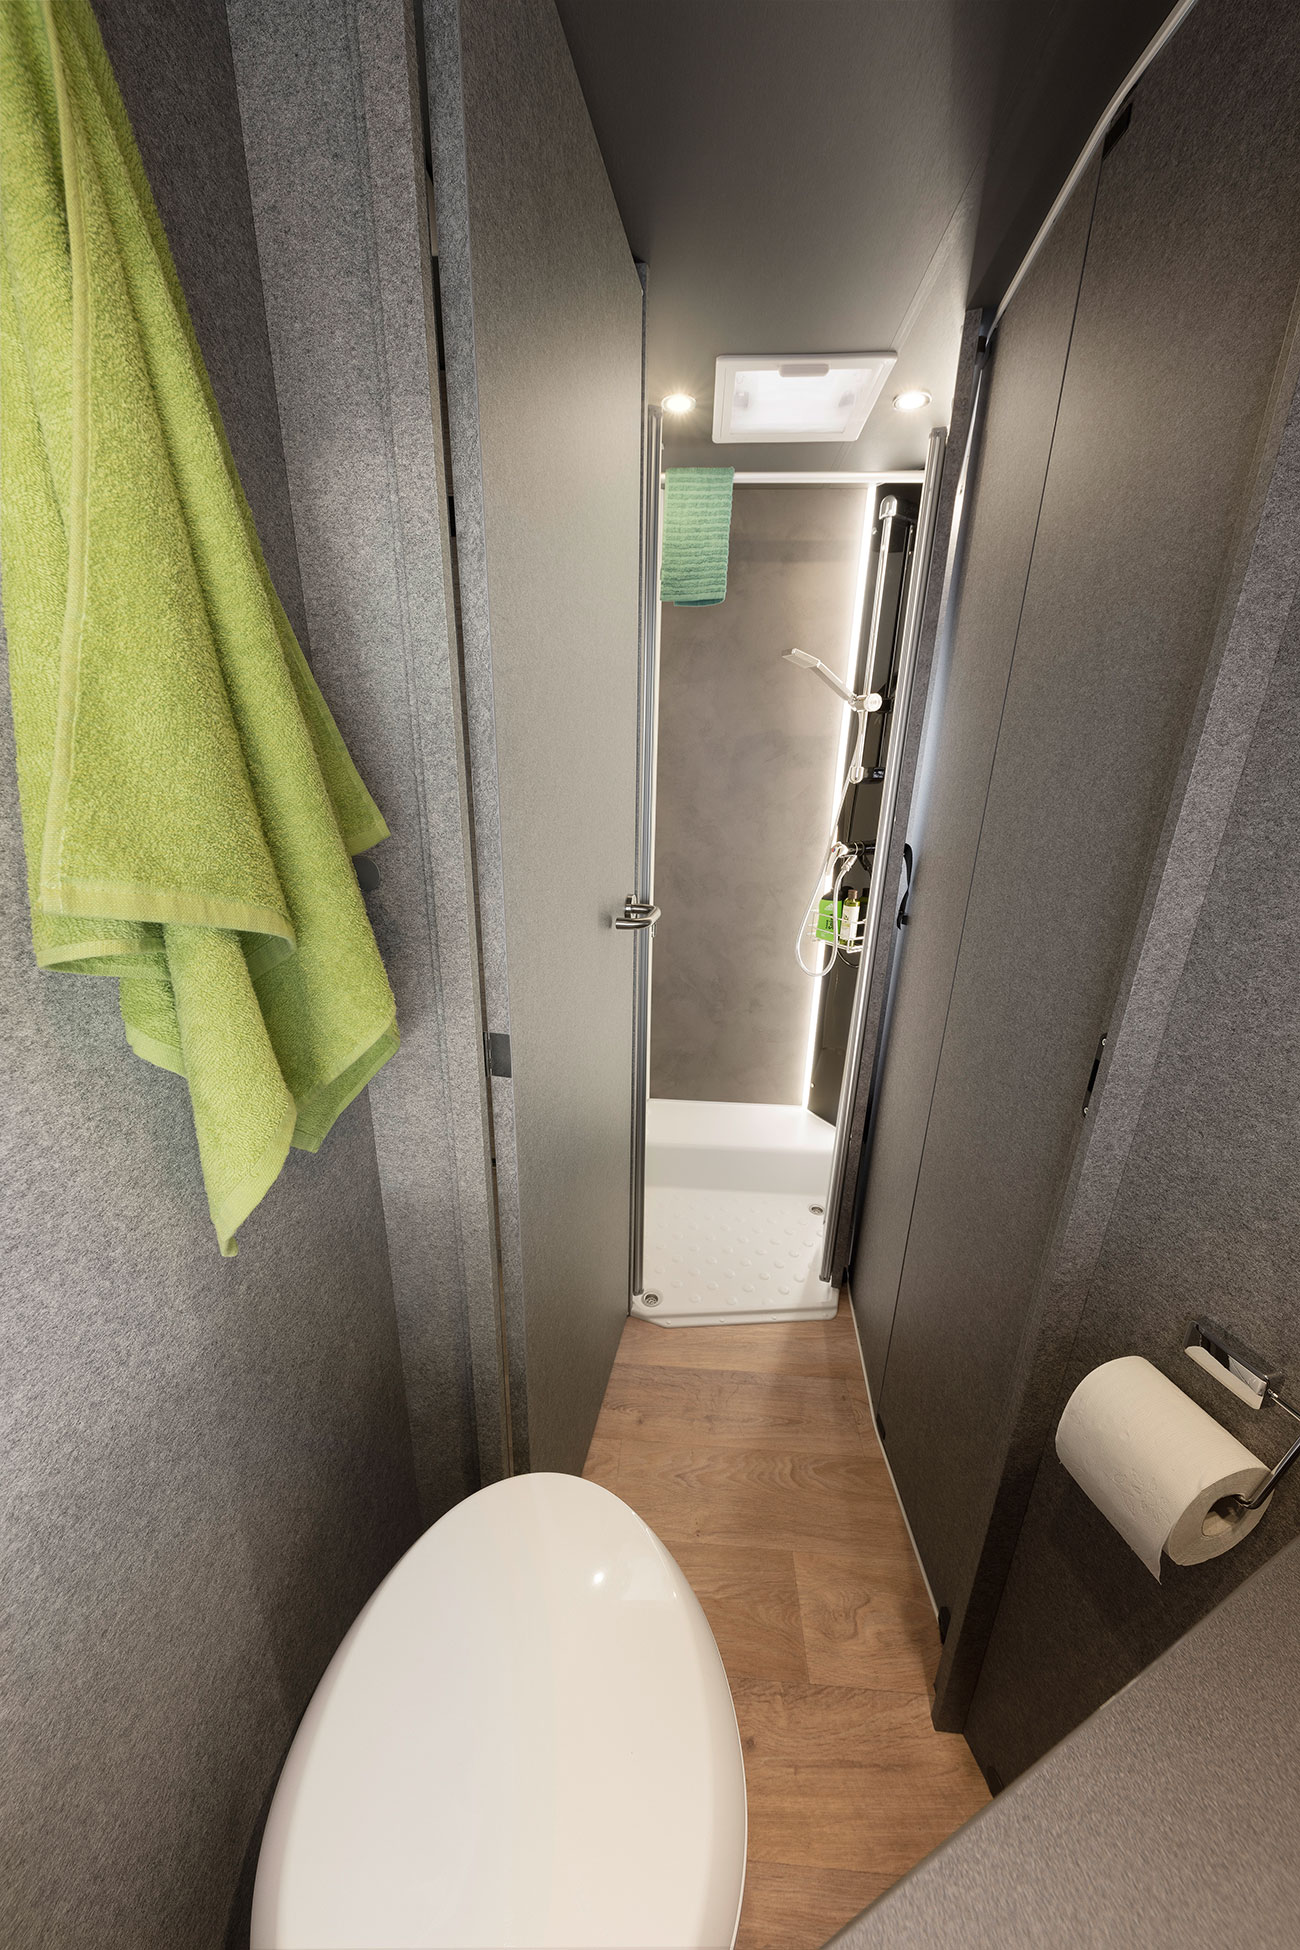 Näppärä ratkaisu: Pesu- ja pukeutumistila (mallikohtainen). Kylpyhuoneen ovella voi sulkea kulun oleskelutilaan. Näin muodostuvaan suureen pesu- ja pukeutumistilaan saadaan kunnolla yksityisyyttä. Makuutilojen suuntaan kylpyhuoneen voi erottaa puisella liukuovella.